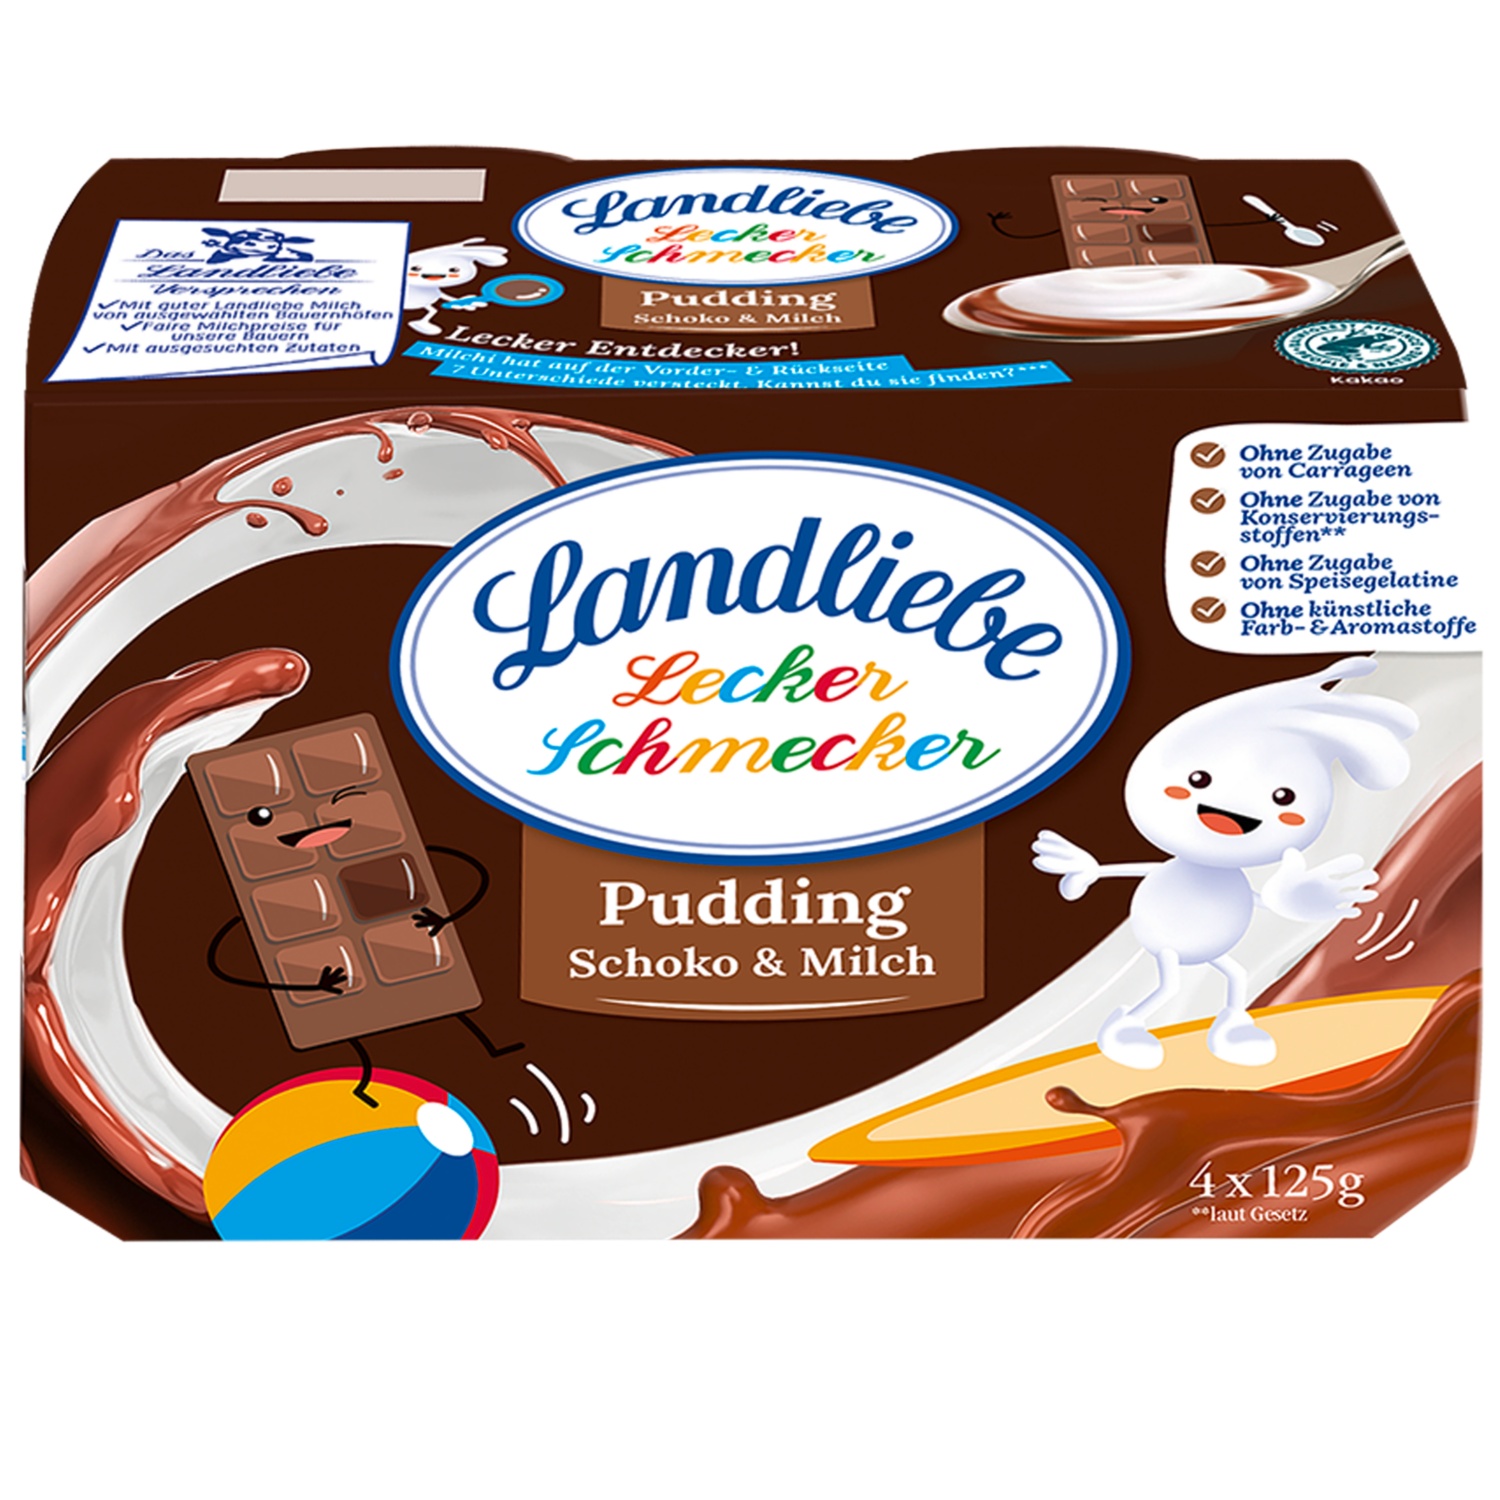 LANDLIEBE Lecker Schmecker Pudding 500 g